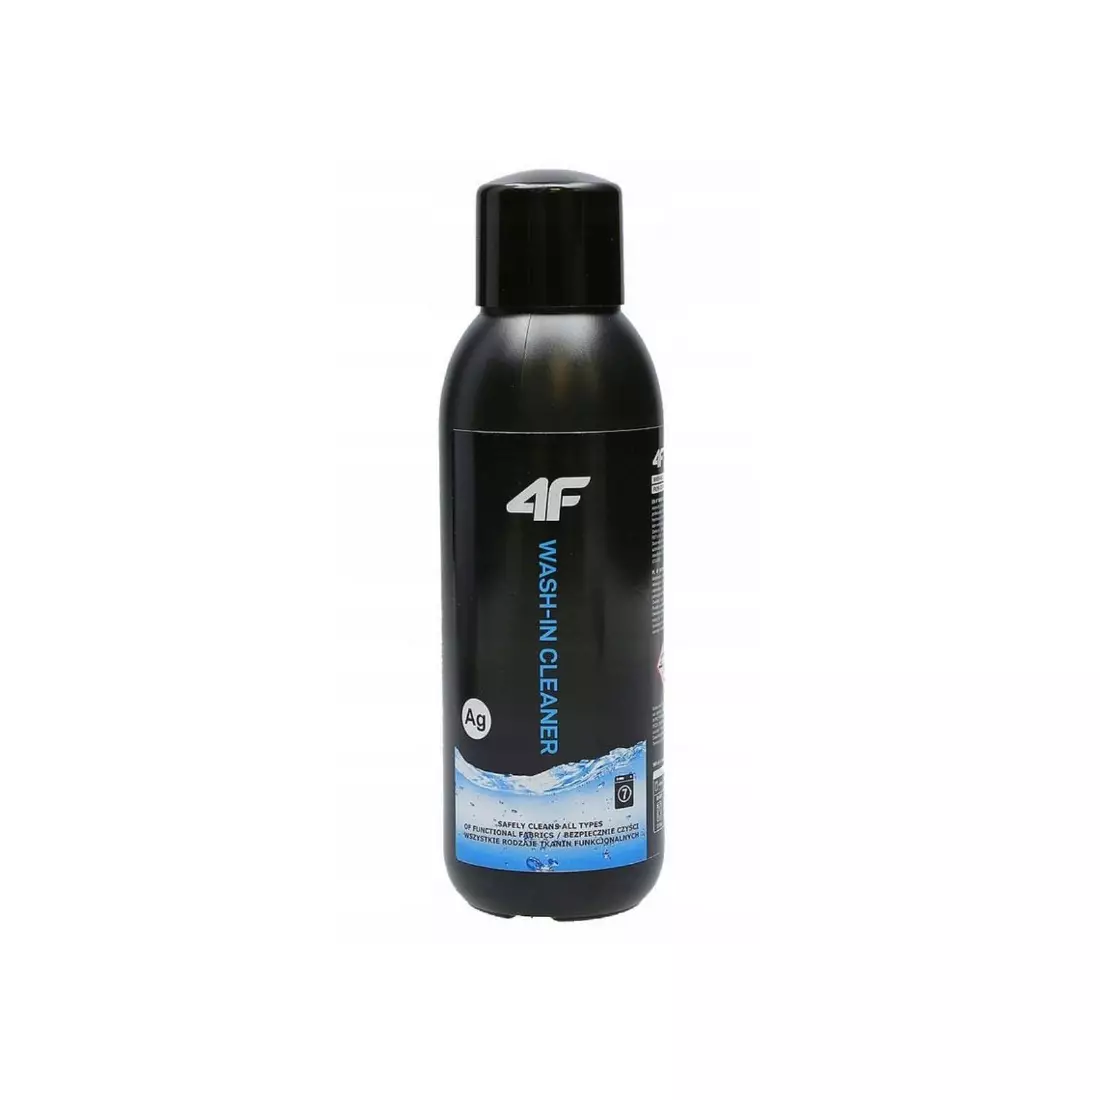 4F WASH-IN CLEANER Washing liquid for sportswear 500ML PIMP304